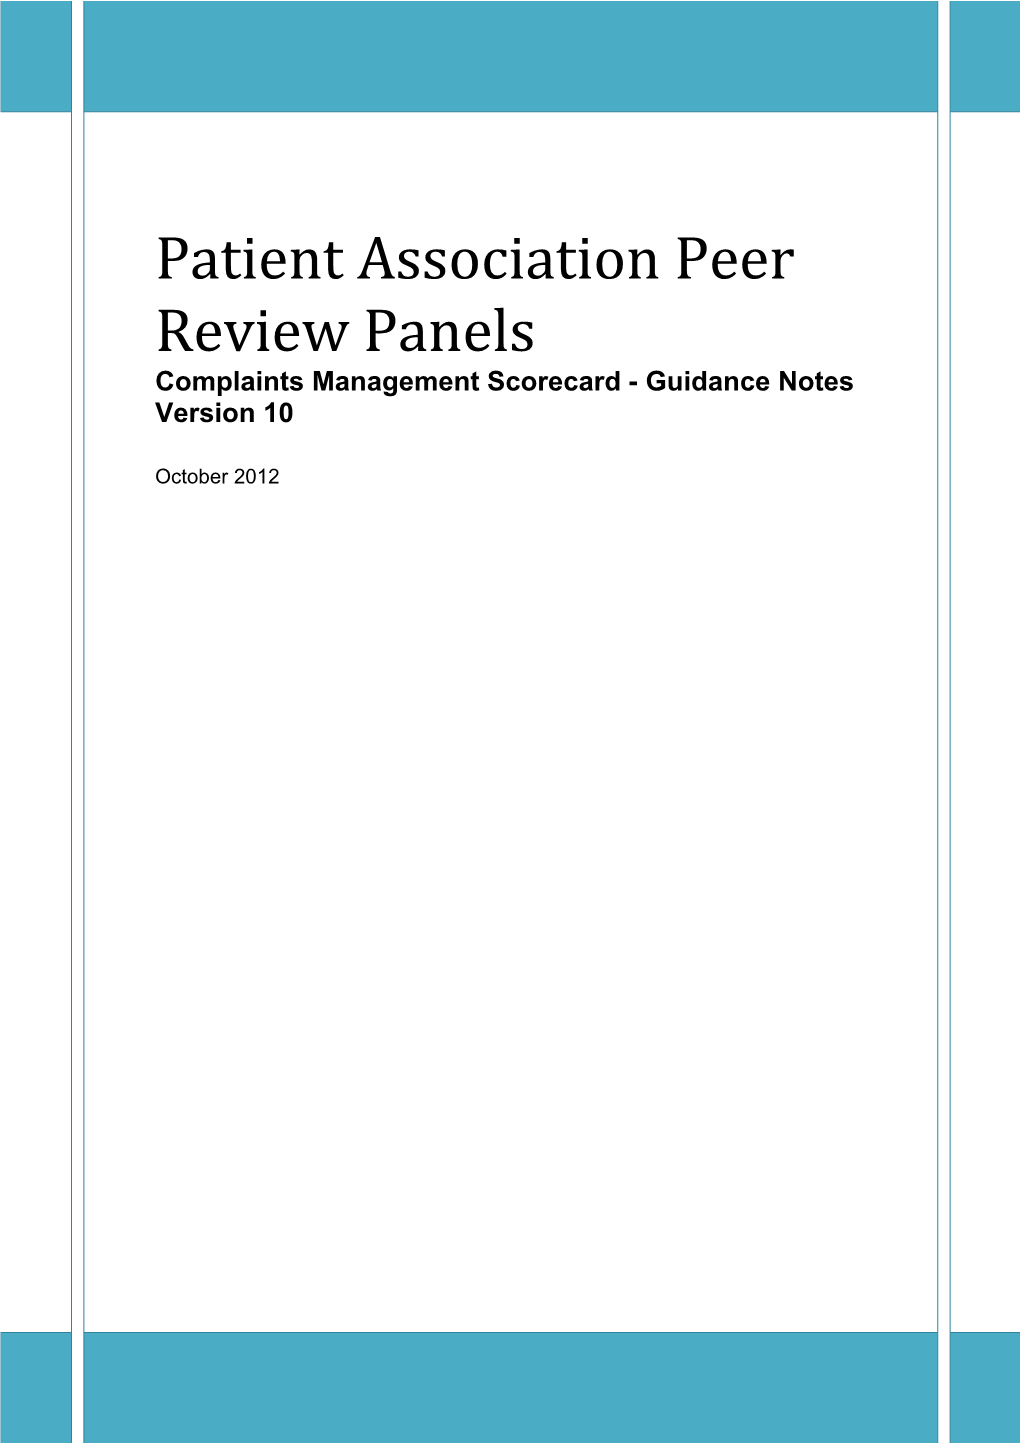 Patient Association Peer Review Panels